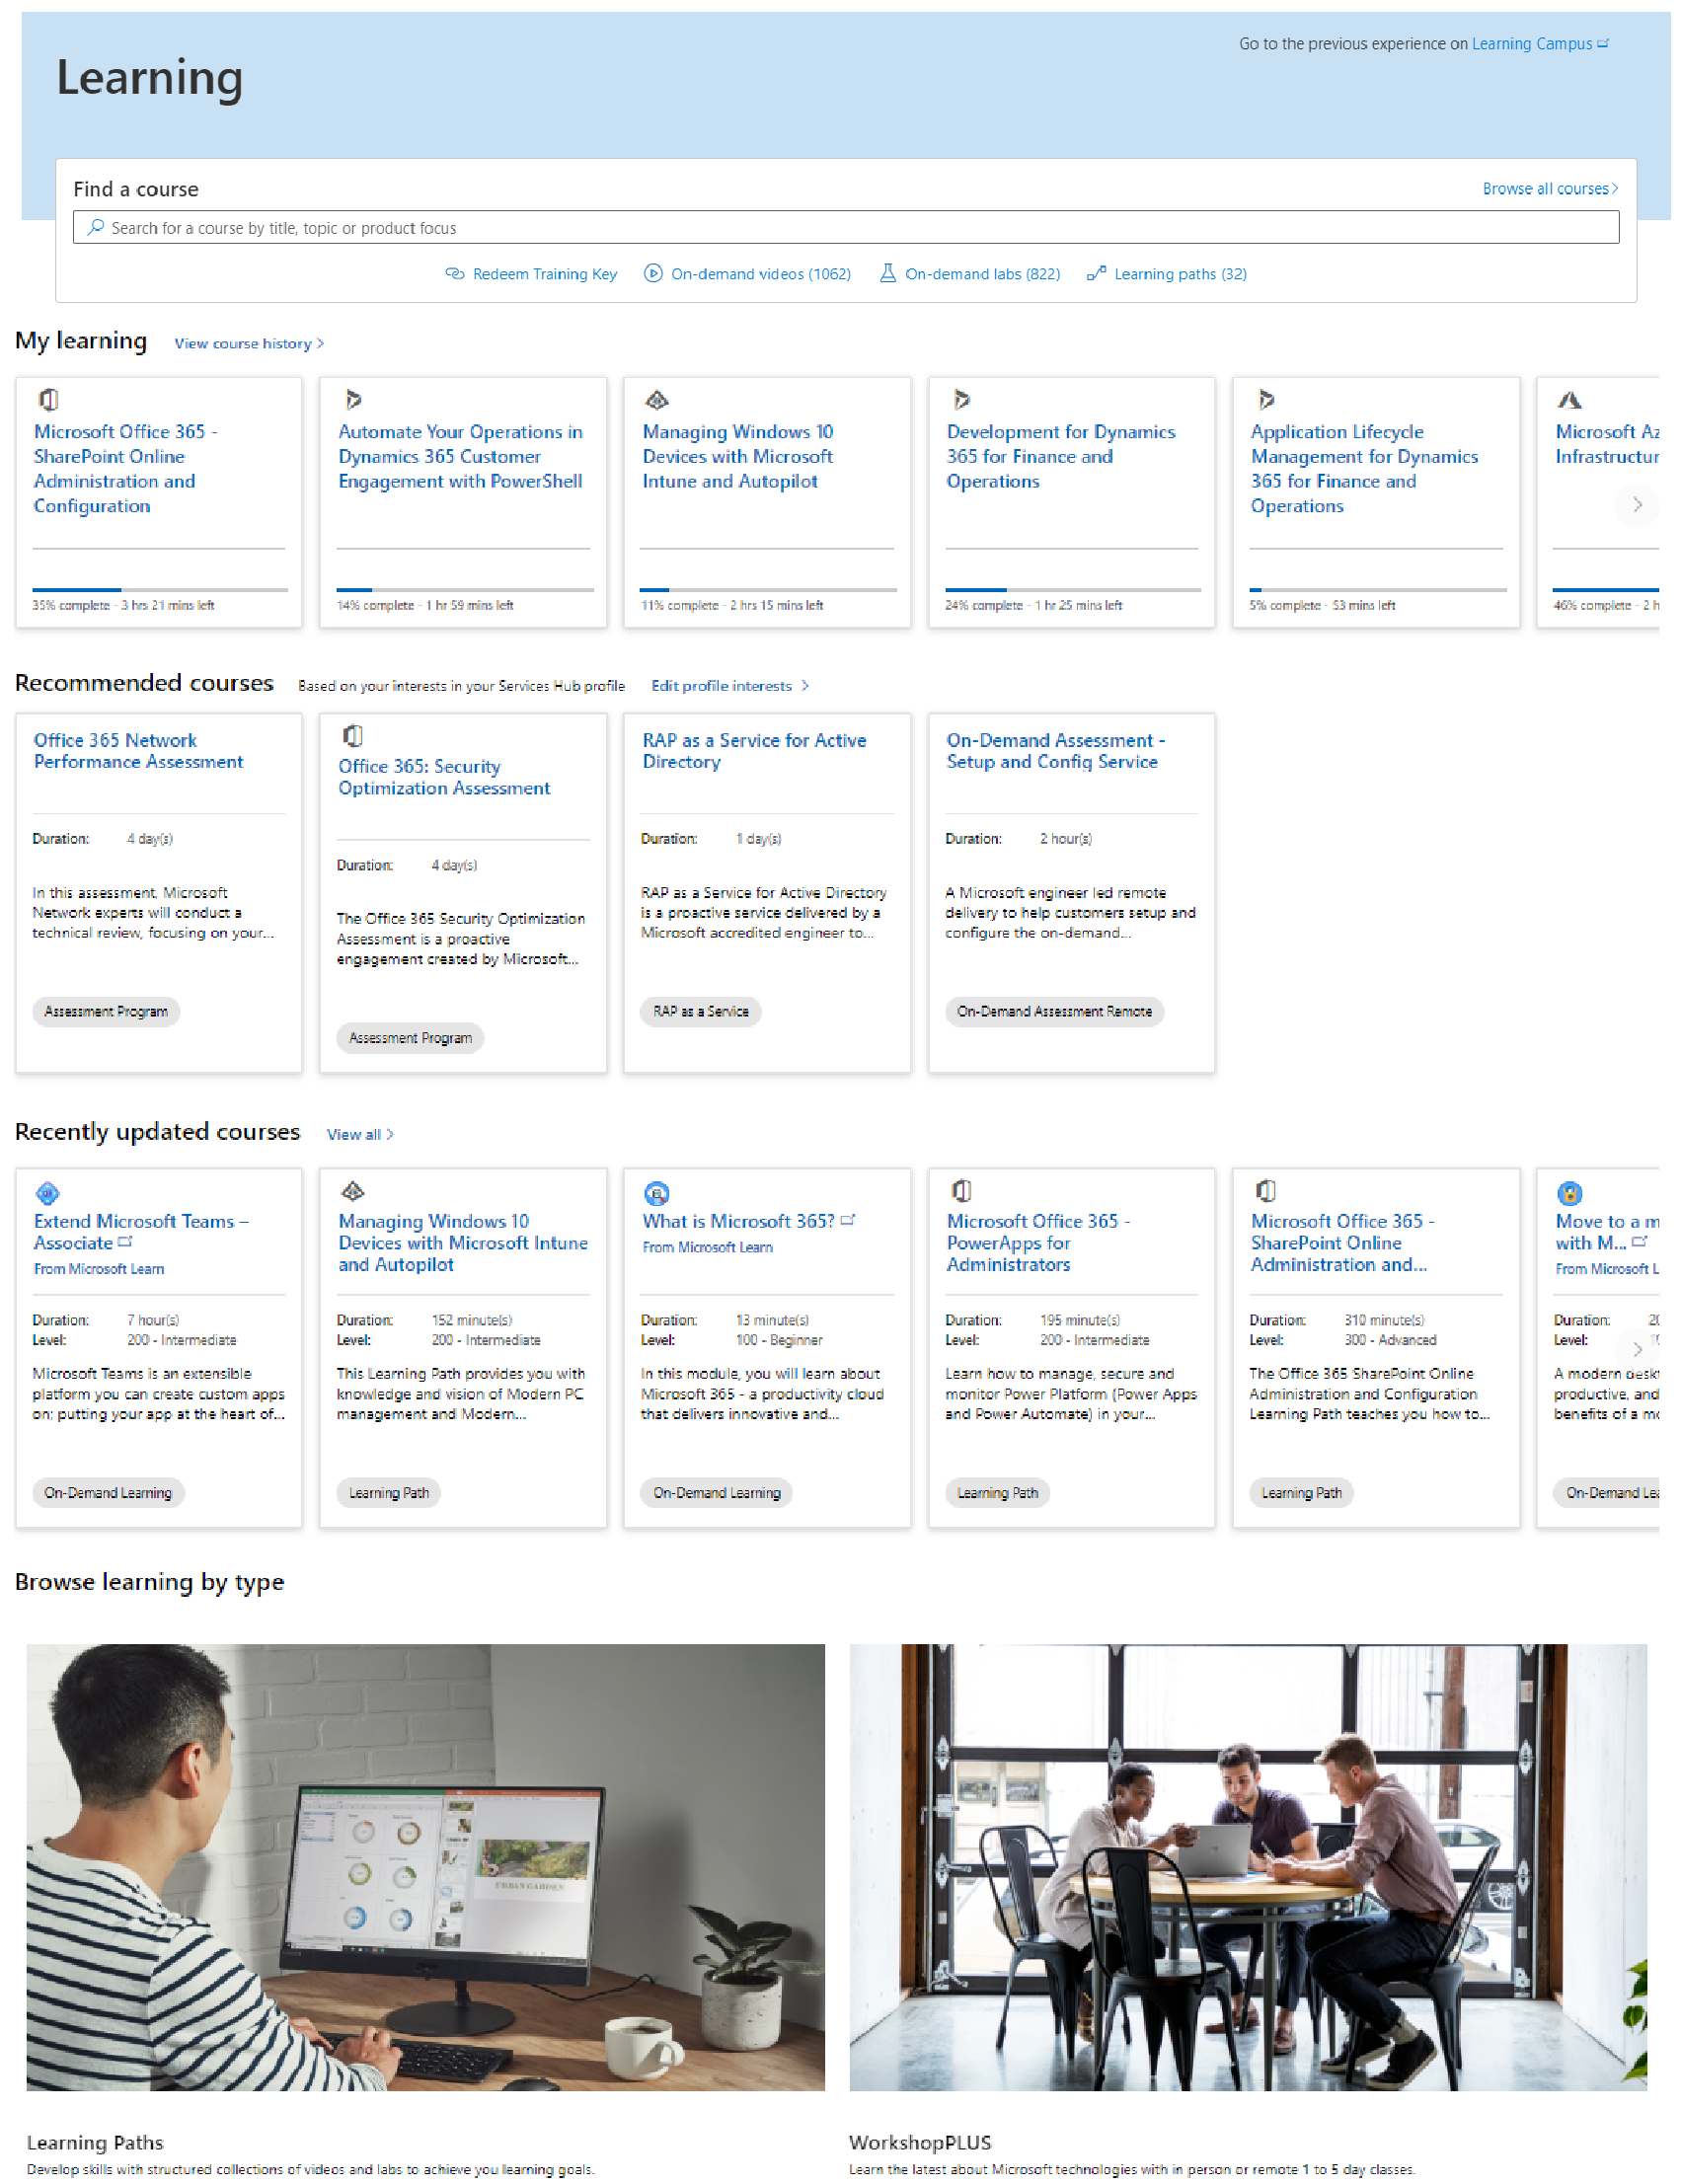 Целевая страница обучения с разделами «Мое обучение» и «Пути обучения», охватывающие Azure, Office 365 и другие технологии.